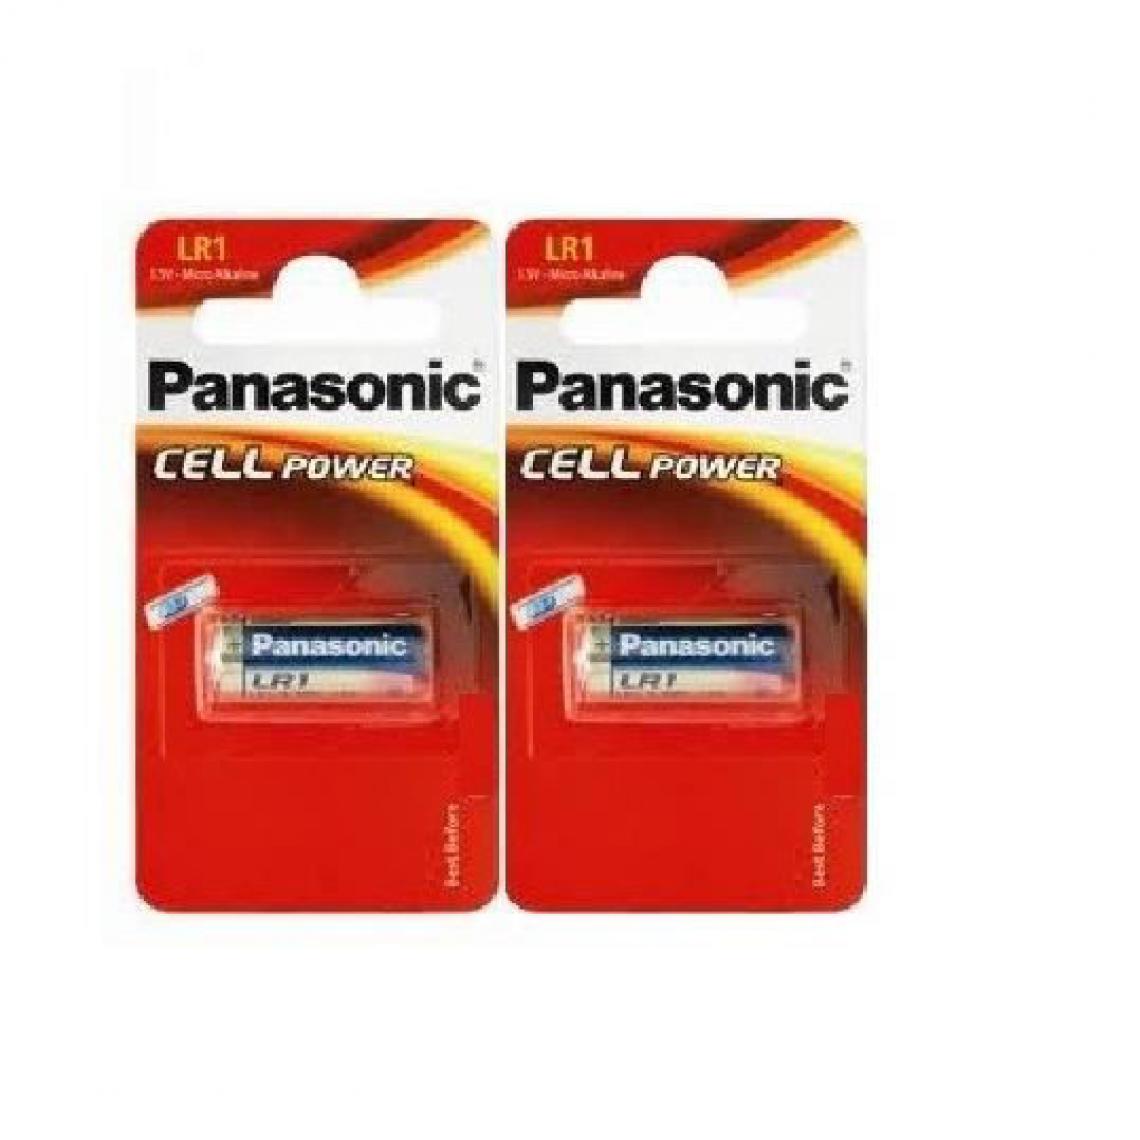 Panasonic - Rasage Electrique - Panasonic lot de 2 piles LR - Piles standard